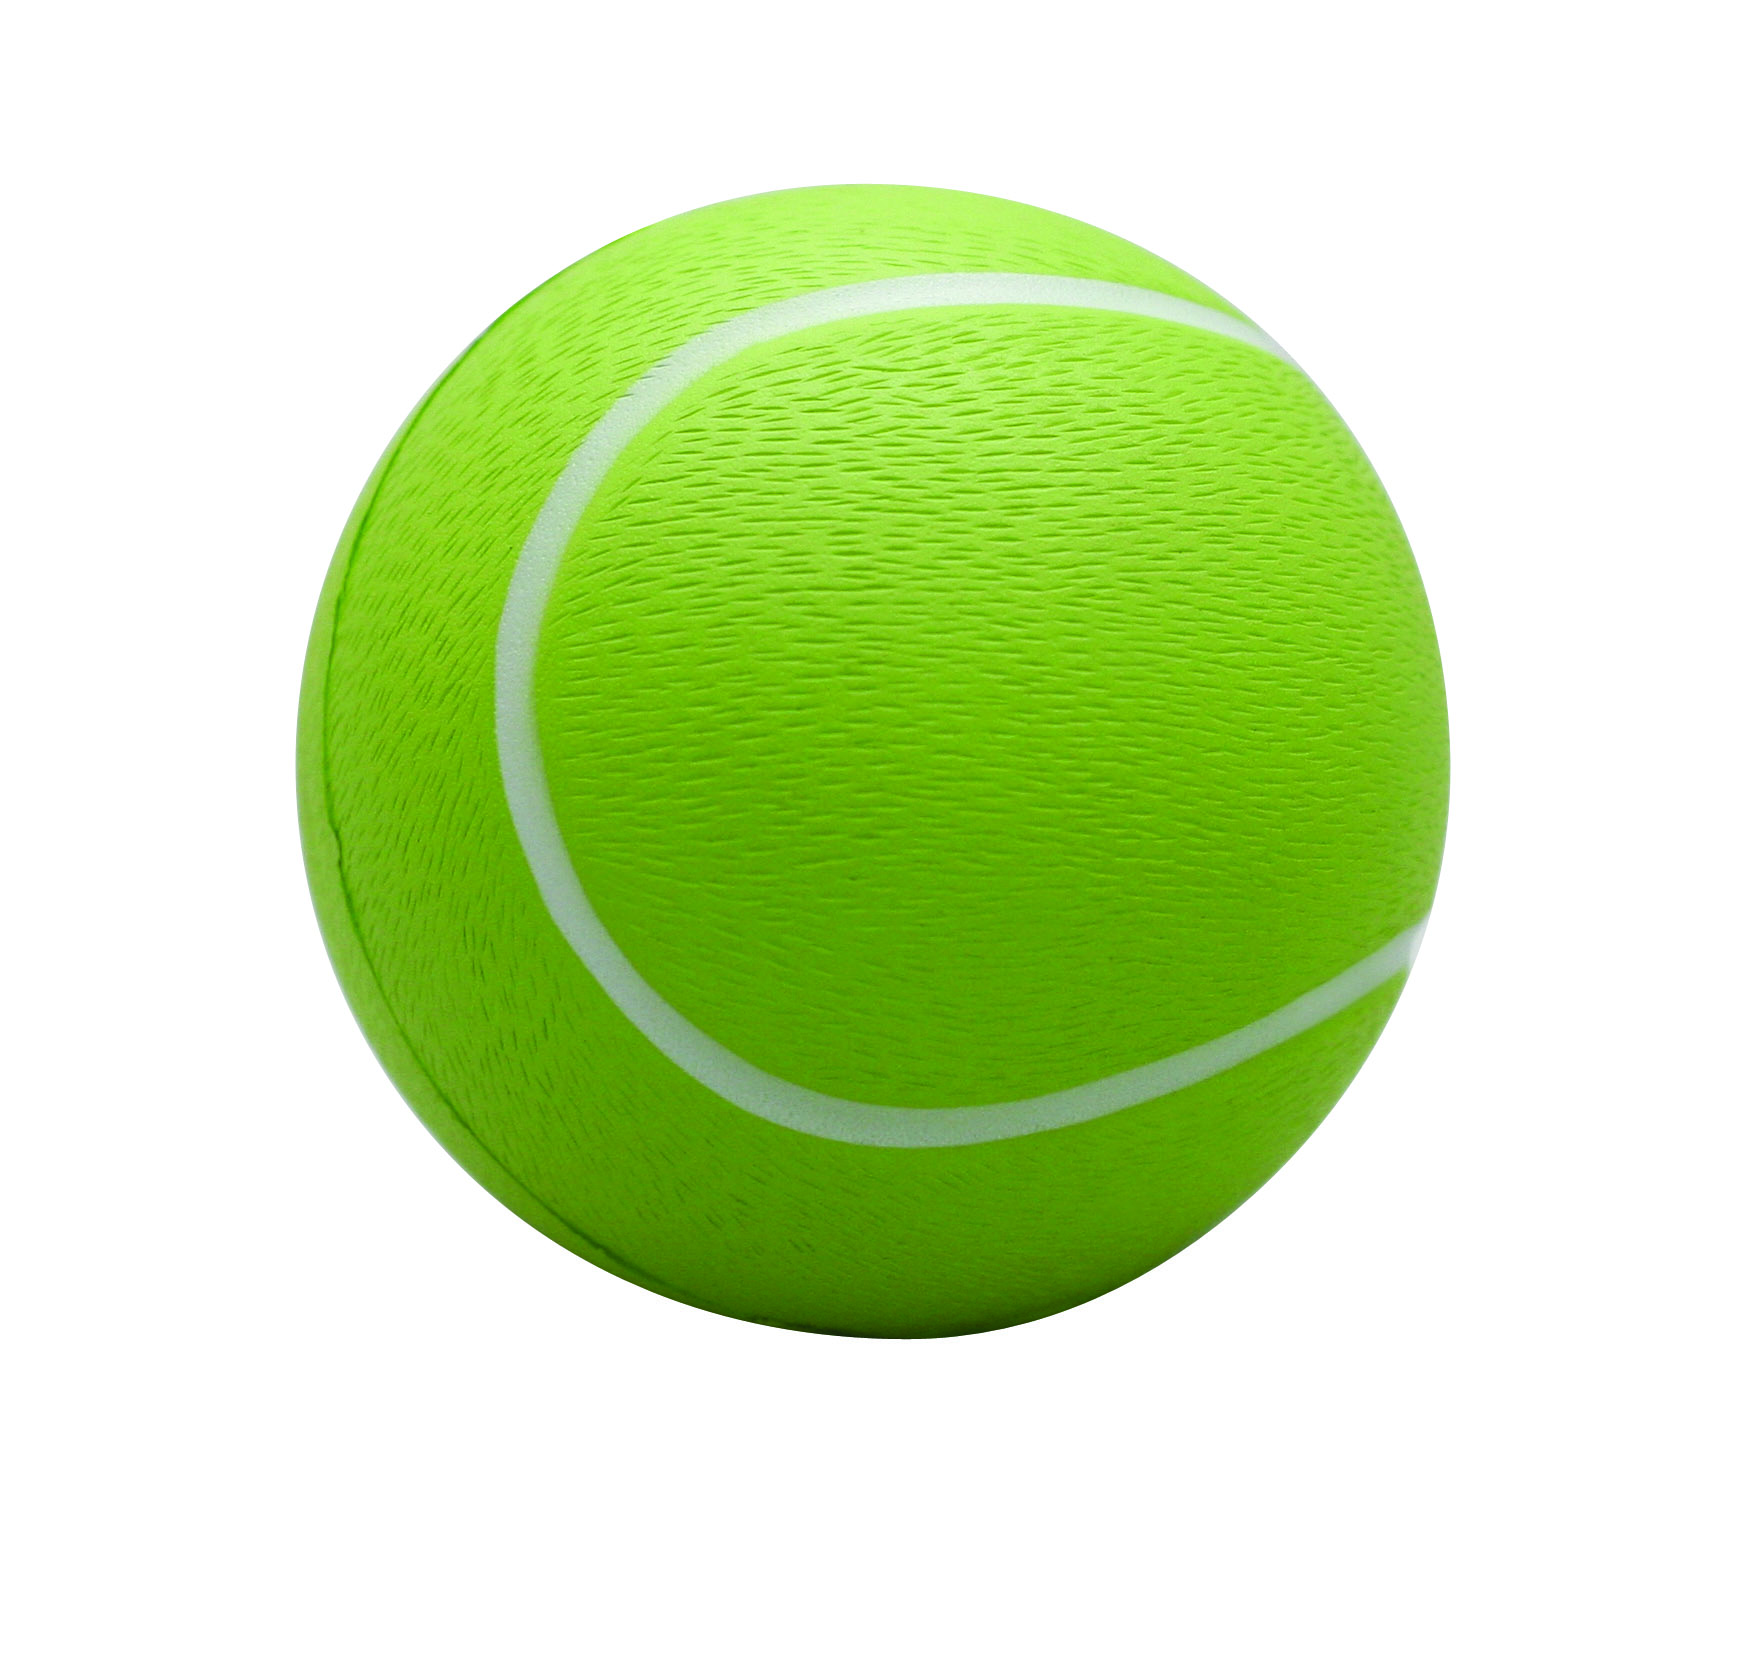 Bouncing Tennis Ball Clipart 